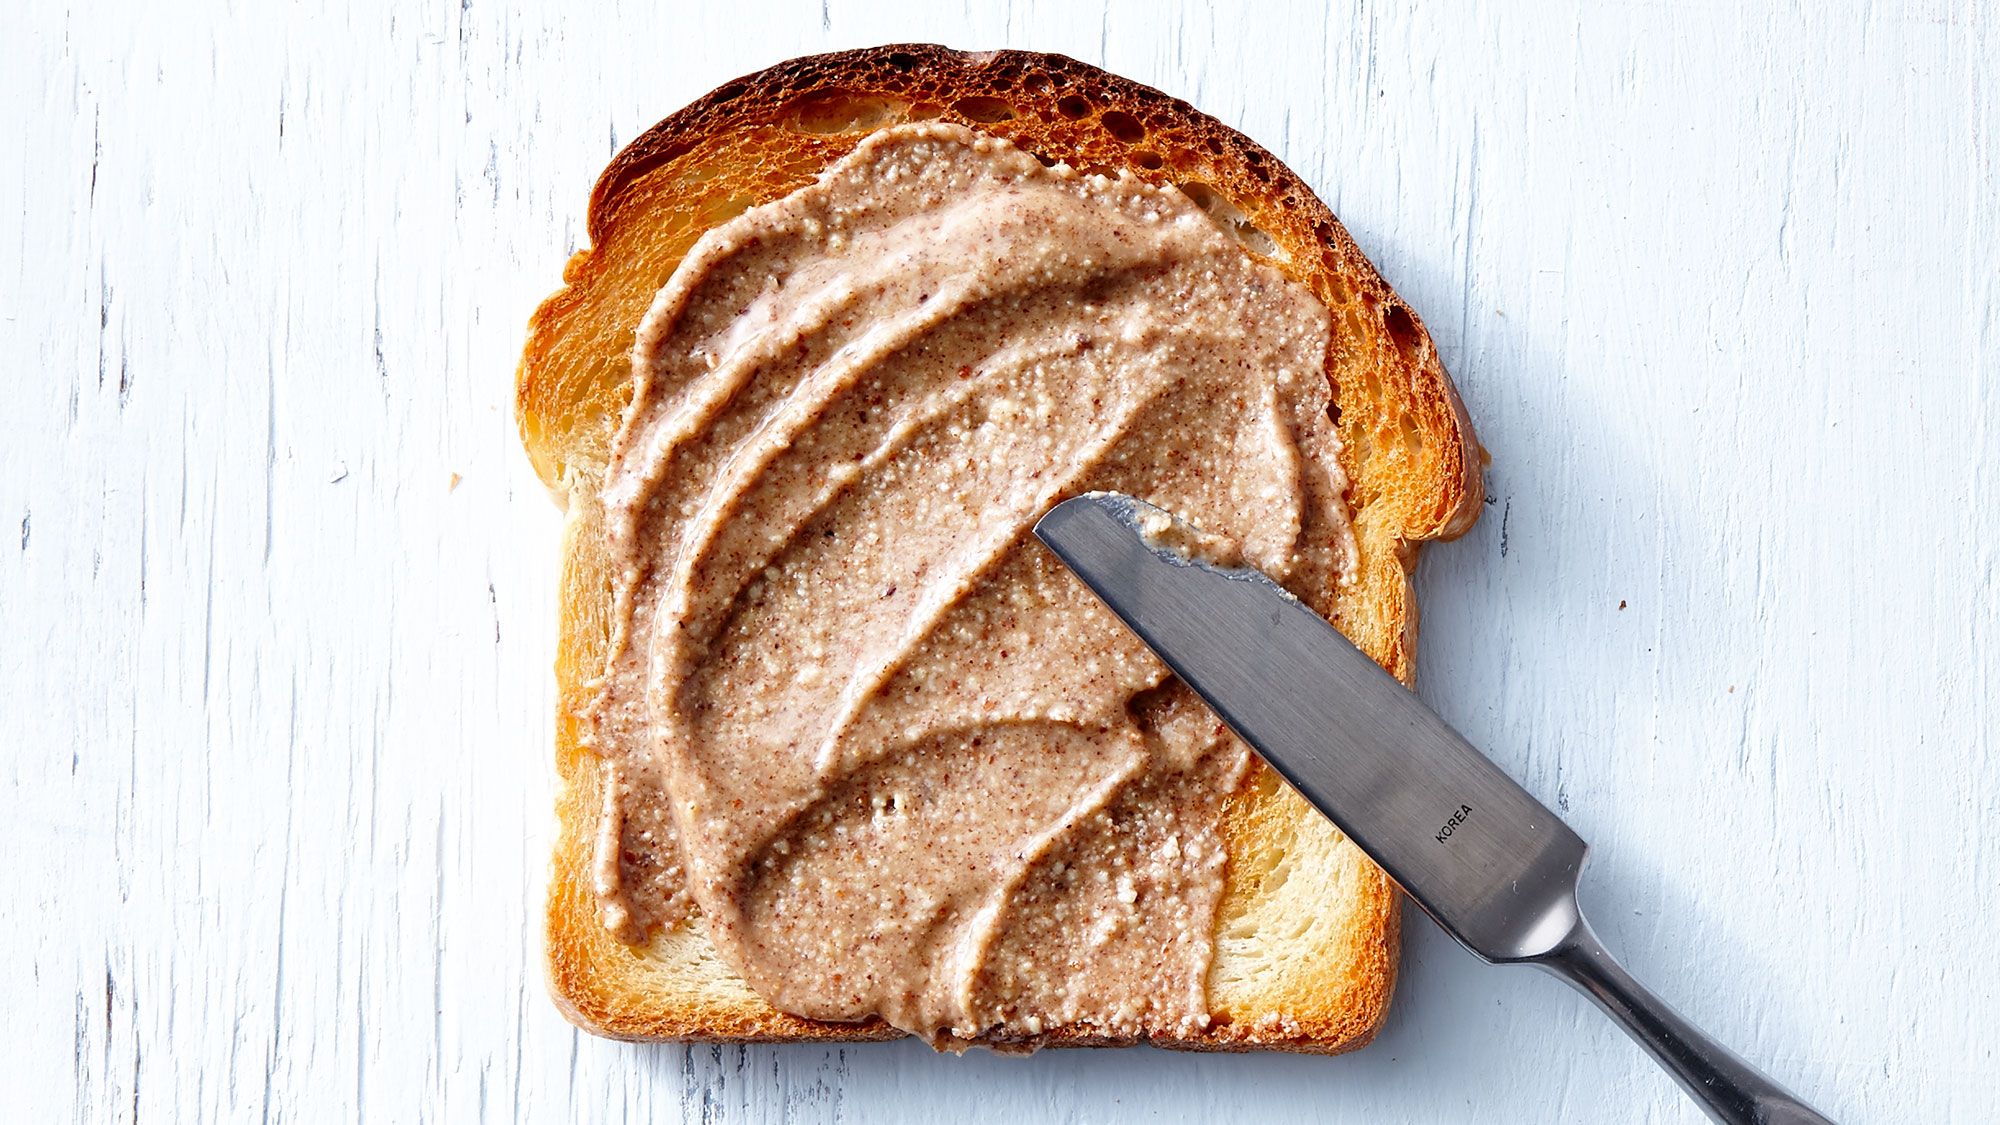 Најбољи путери од орашастих плодова: ножем за мазање маслаца од орашастих плодова на хлеб